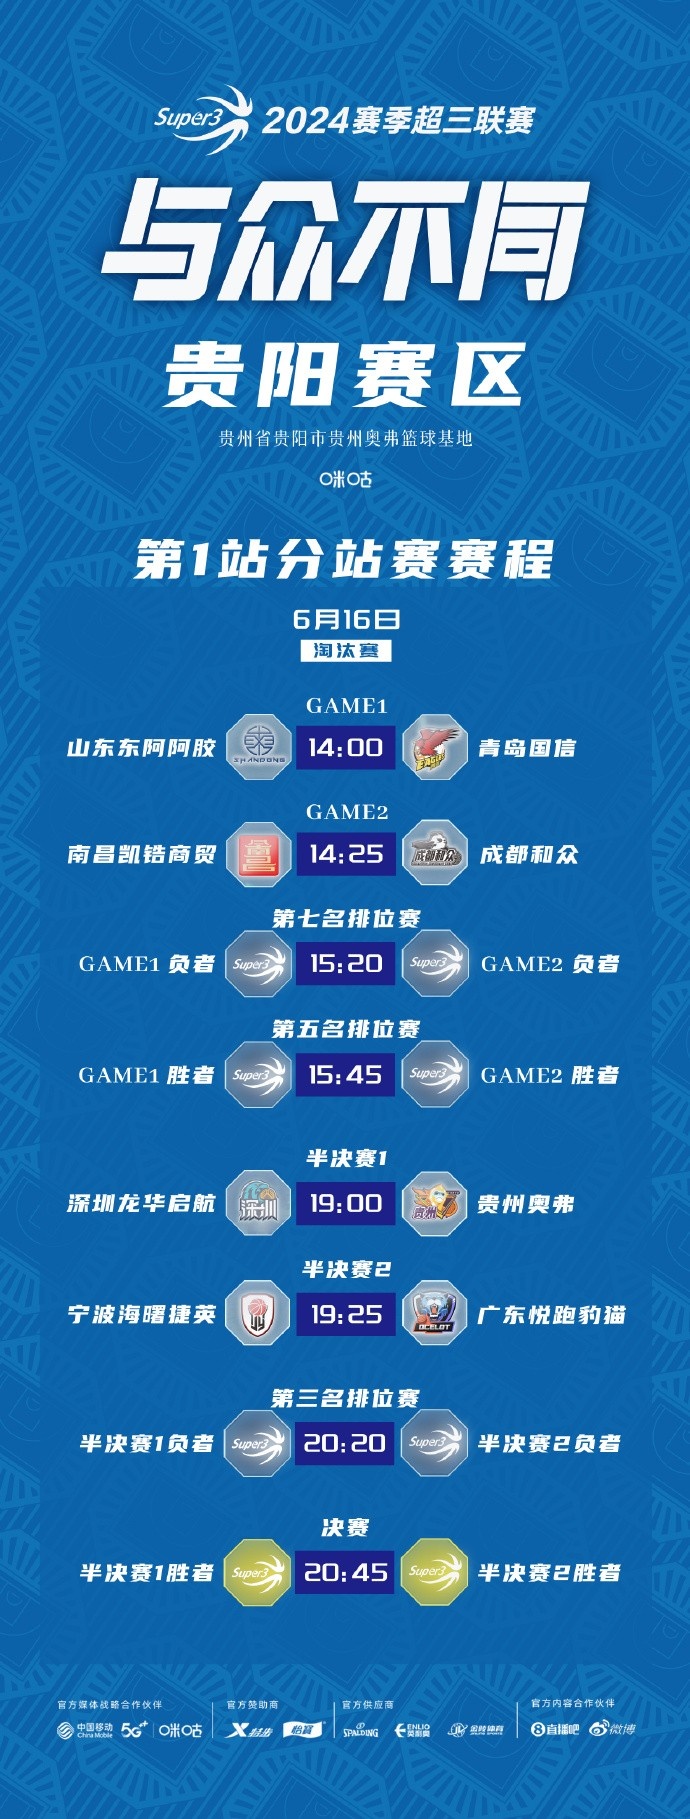 【6月16日赛程预告】超三贵阳/武汉赛区首站比赛Day2淘汰赛赛程